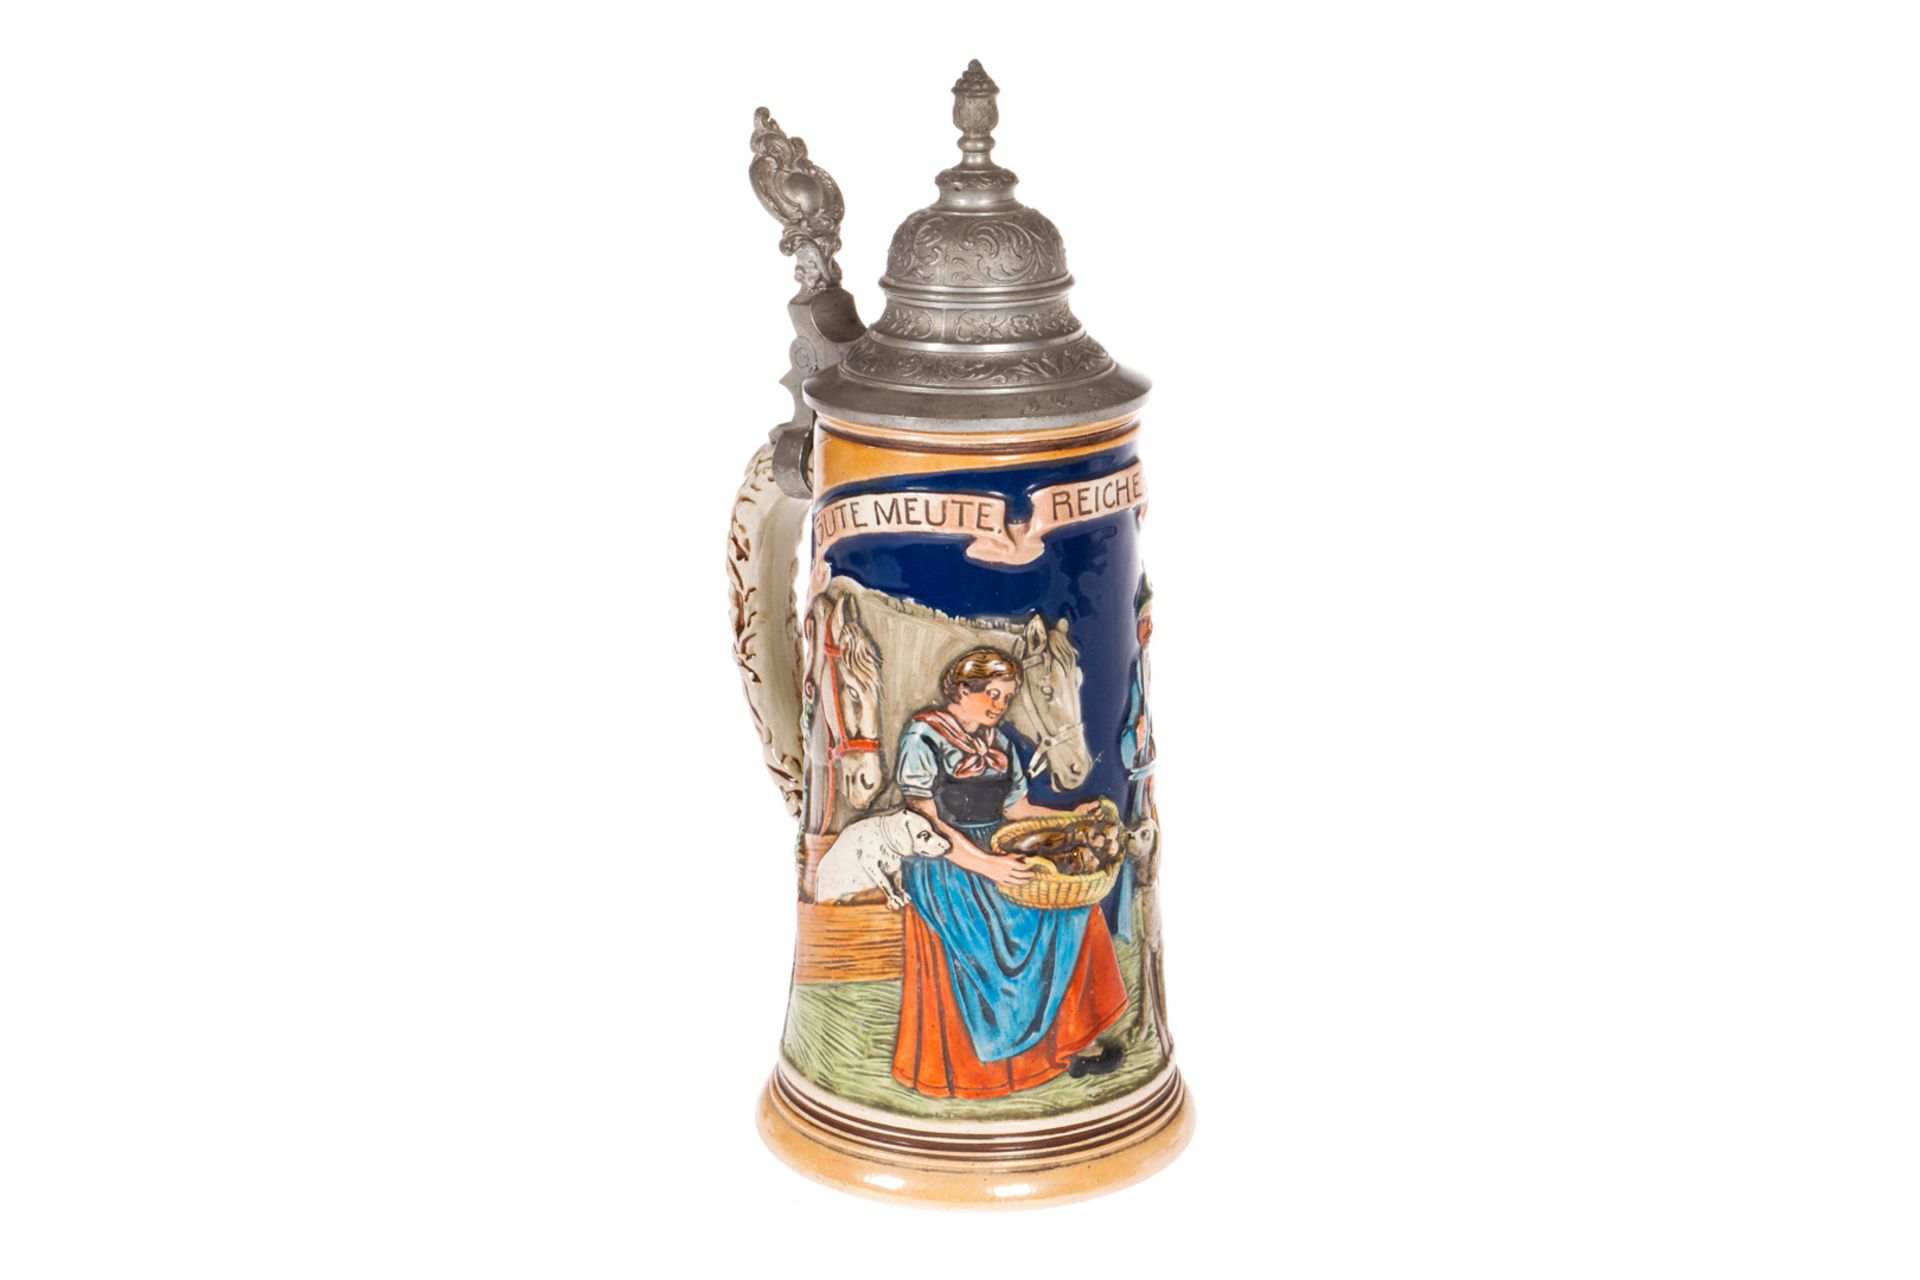 Keramik Bierkrug mit Zinndeckel, um 1900, mit Jägern und Welpenmotiv und Aufschrift ”Gute Meute,